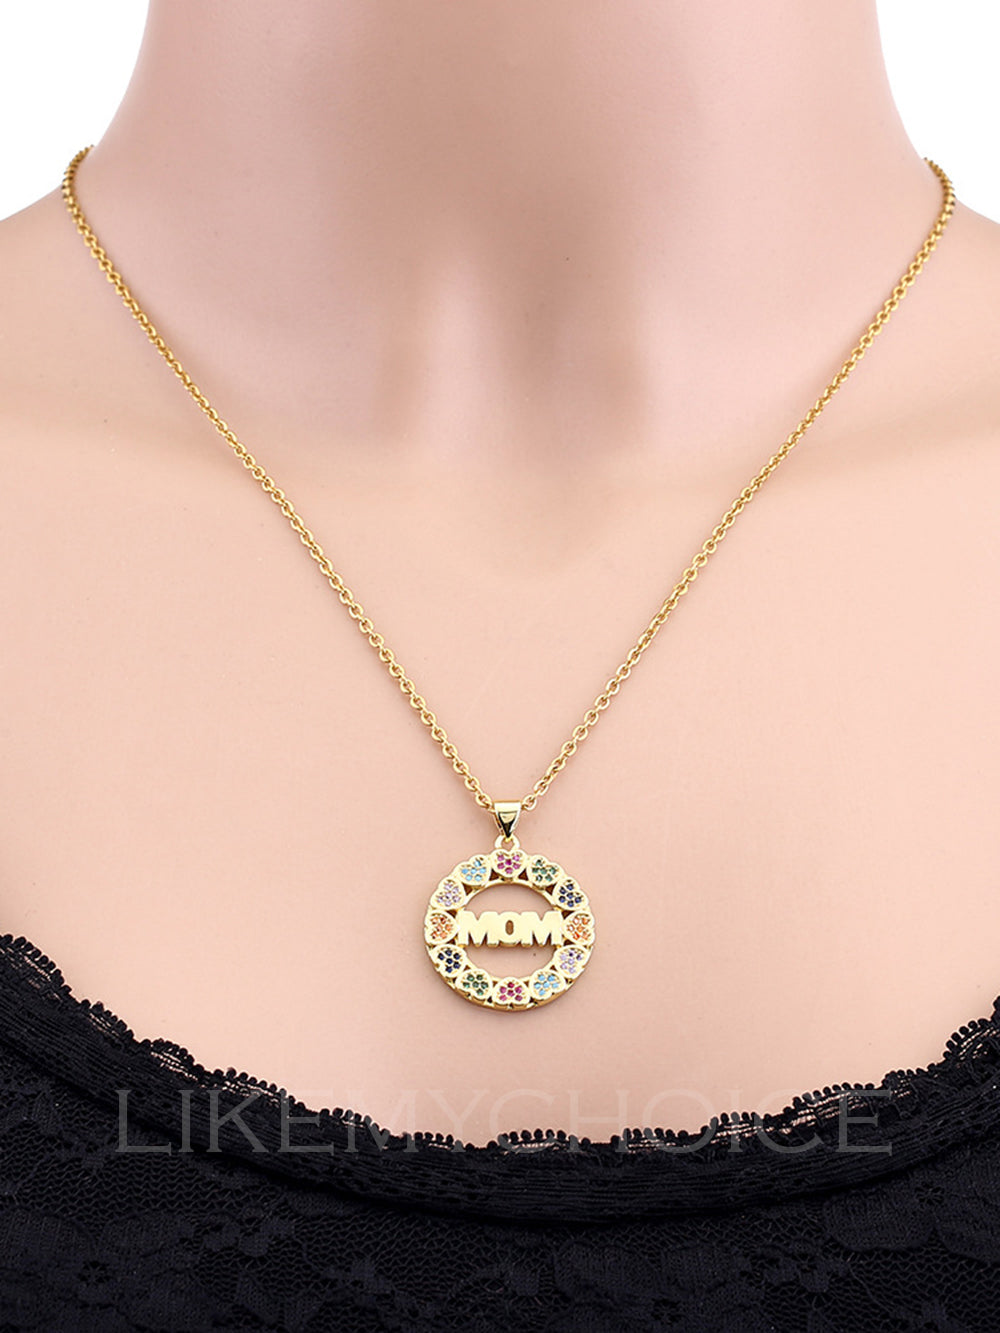 Cobre de moda con collar de mamá elegante en forma de corazón de circonita